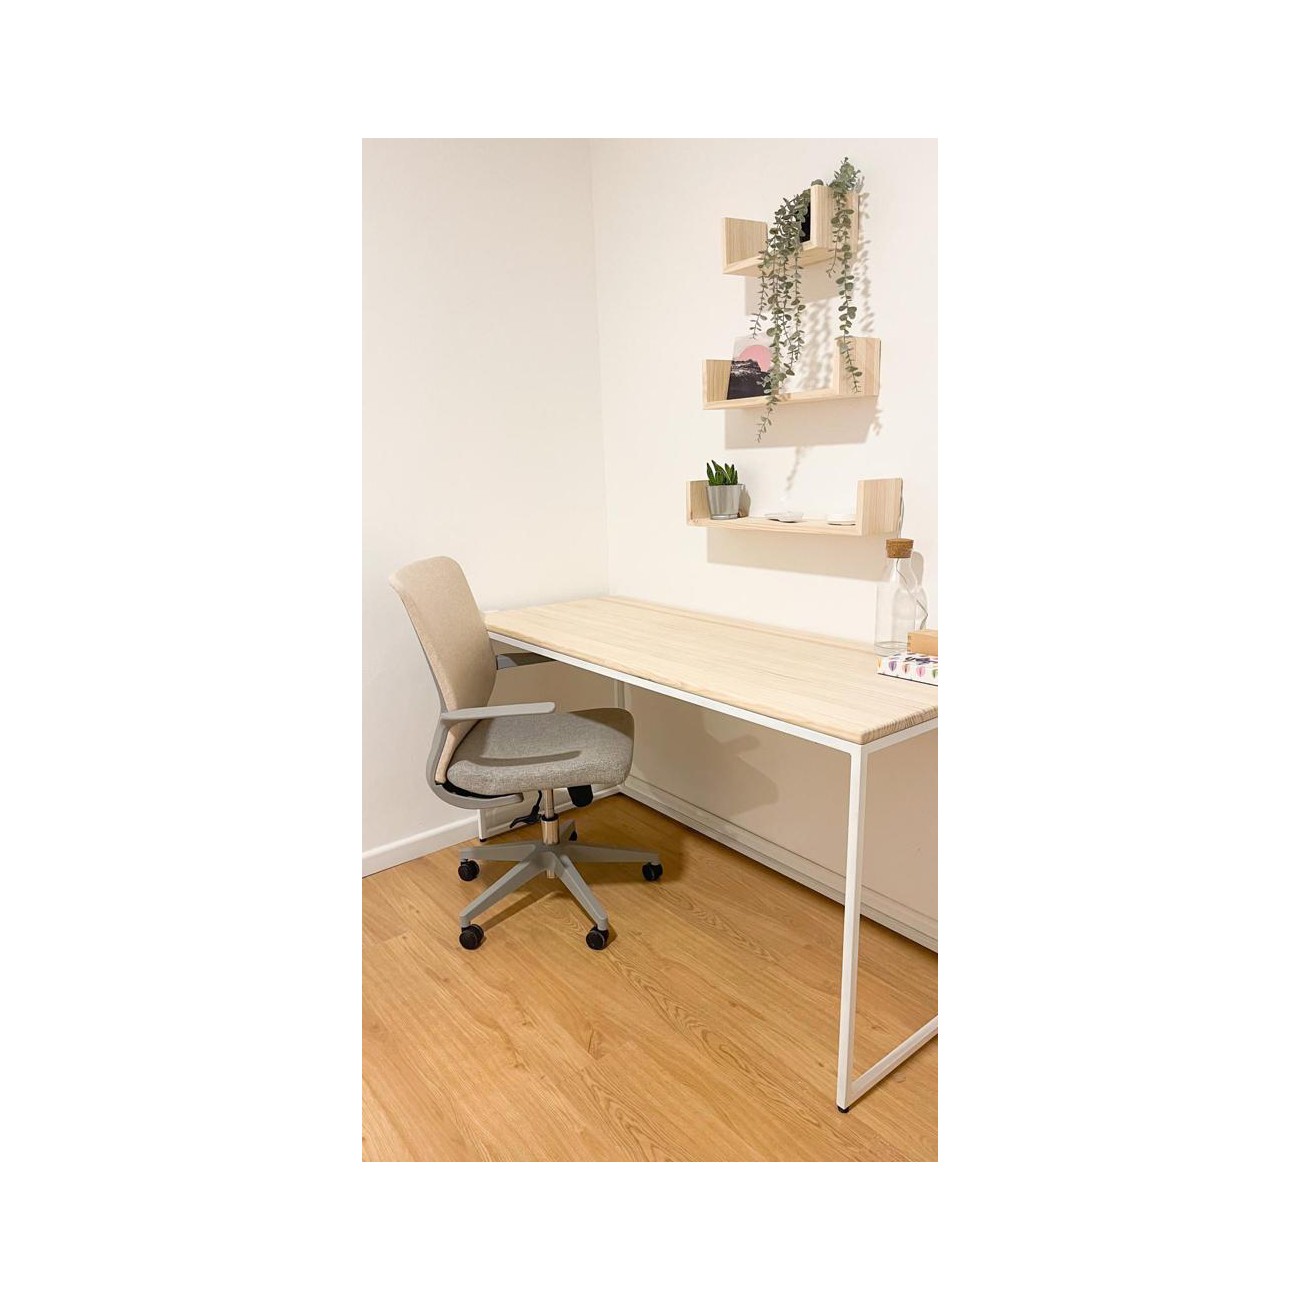 Mesa con tablero de madera y patas metálicas en color Blanco